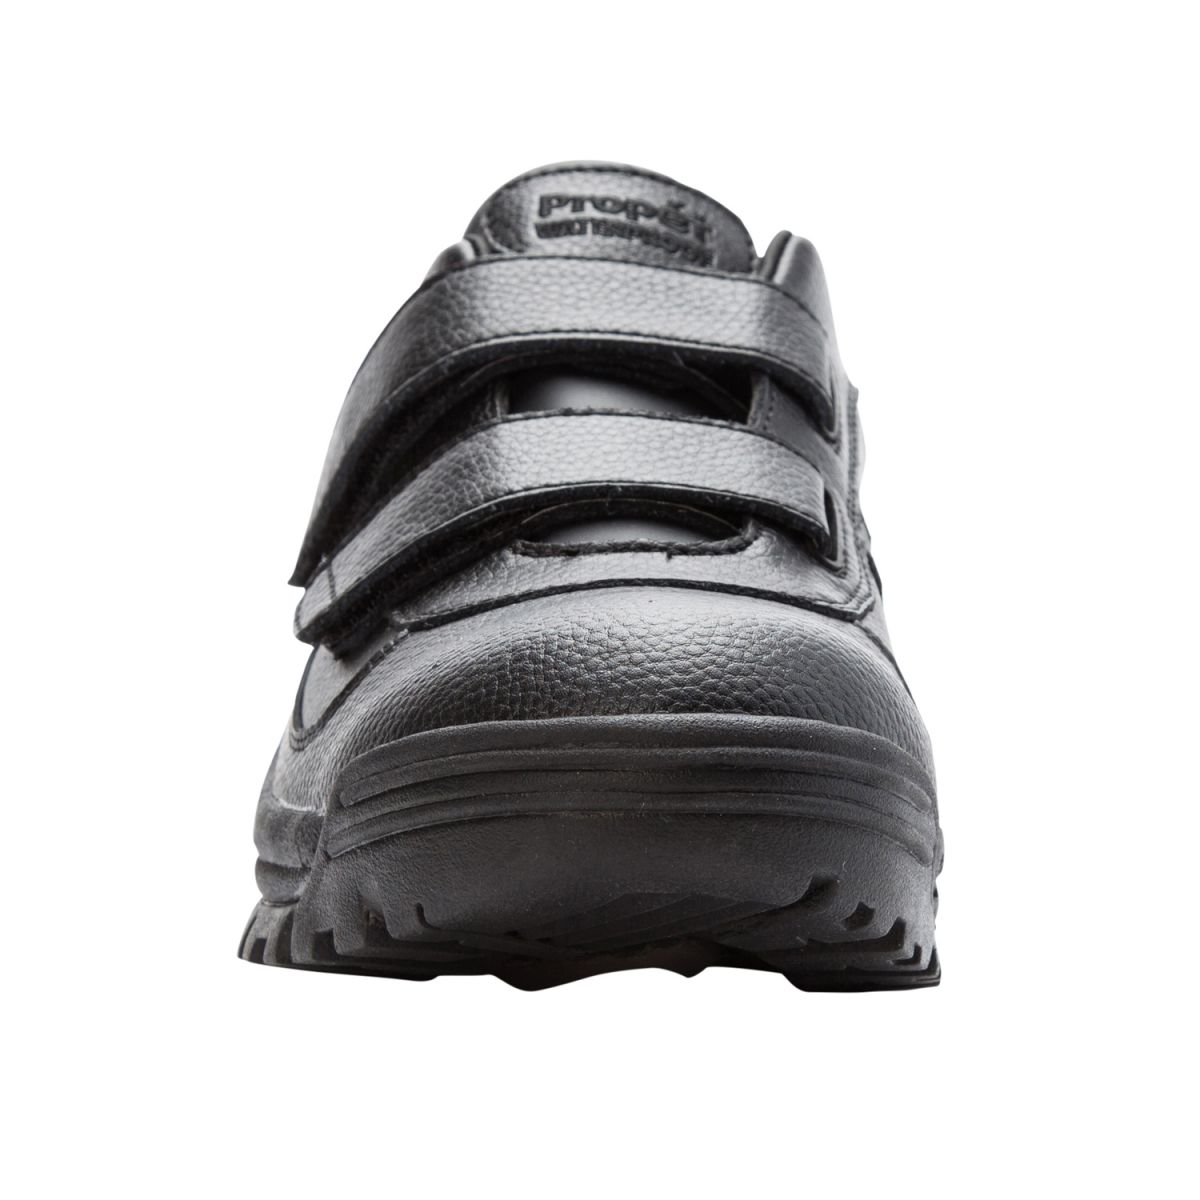 Propet Men's Cliff Walker Low Strap Waterproof Walking Shoe Black Leather - MBA023LBLK - image 5 of 6